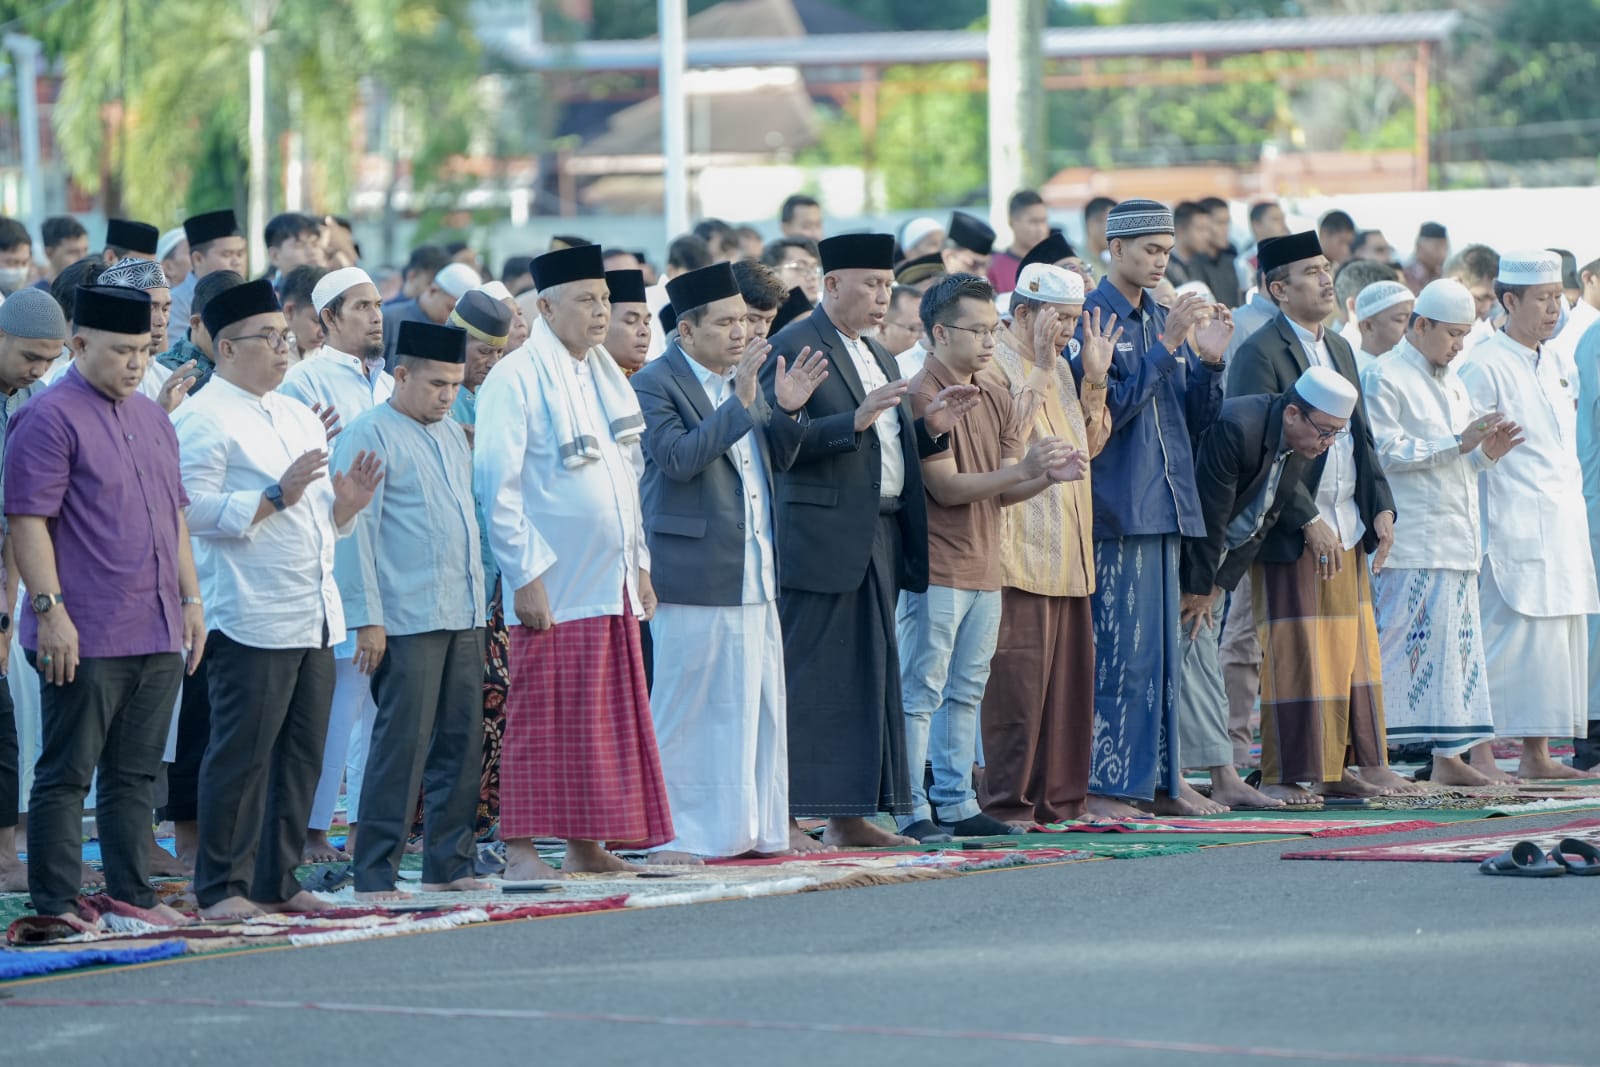 Gubernur Sumatera Barat, Mahyeldi Ansharullah bersama ribuan masyarakat mengikuti sholat Idul Adha 1444 H / 2023 M di halaman Kantor Gubernur Sumbar, Kamis (29/6/2023). Foto Adpsb.